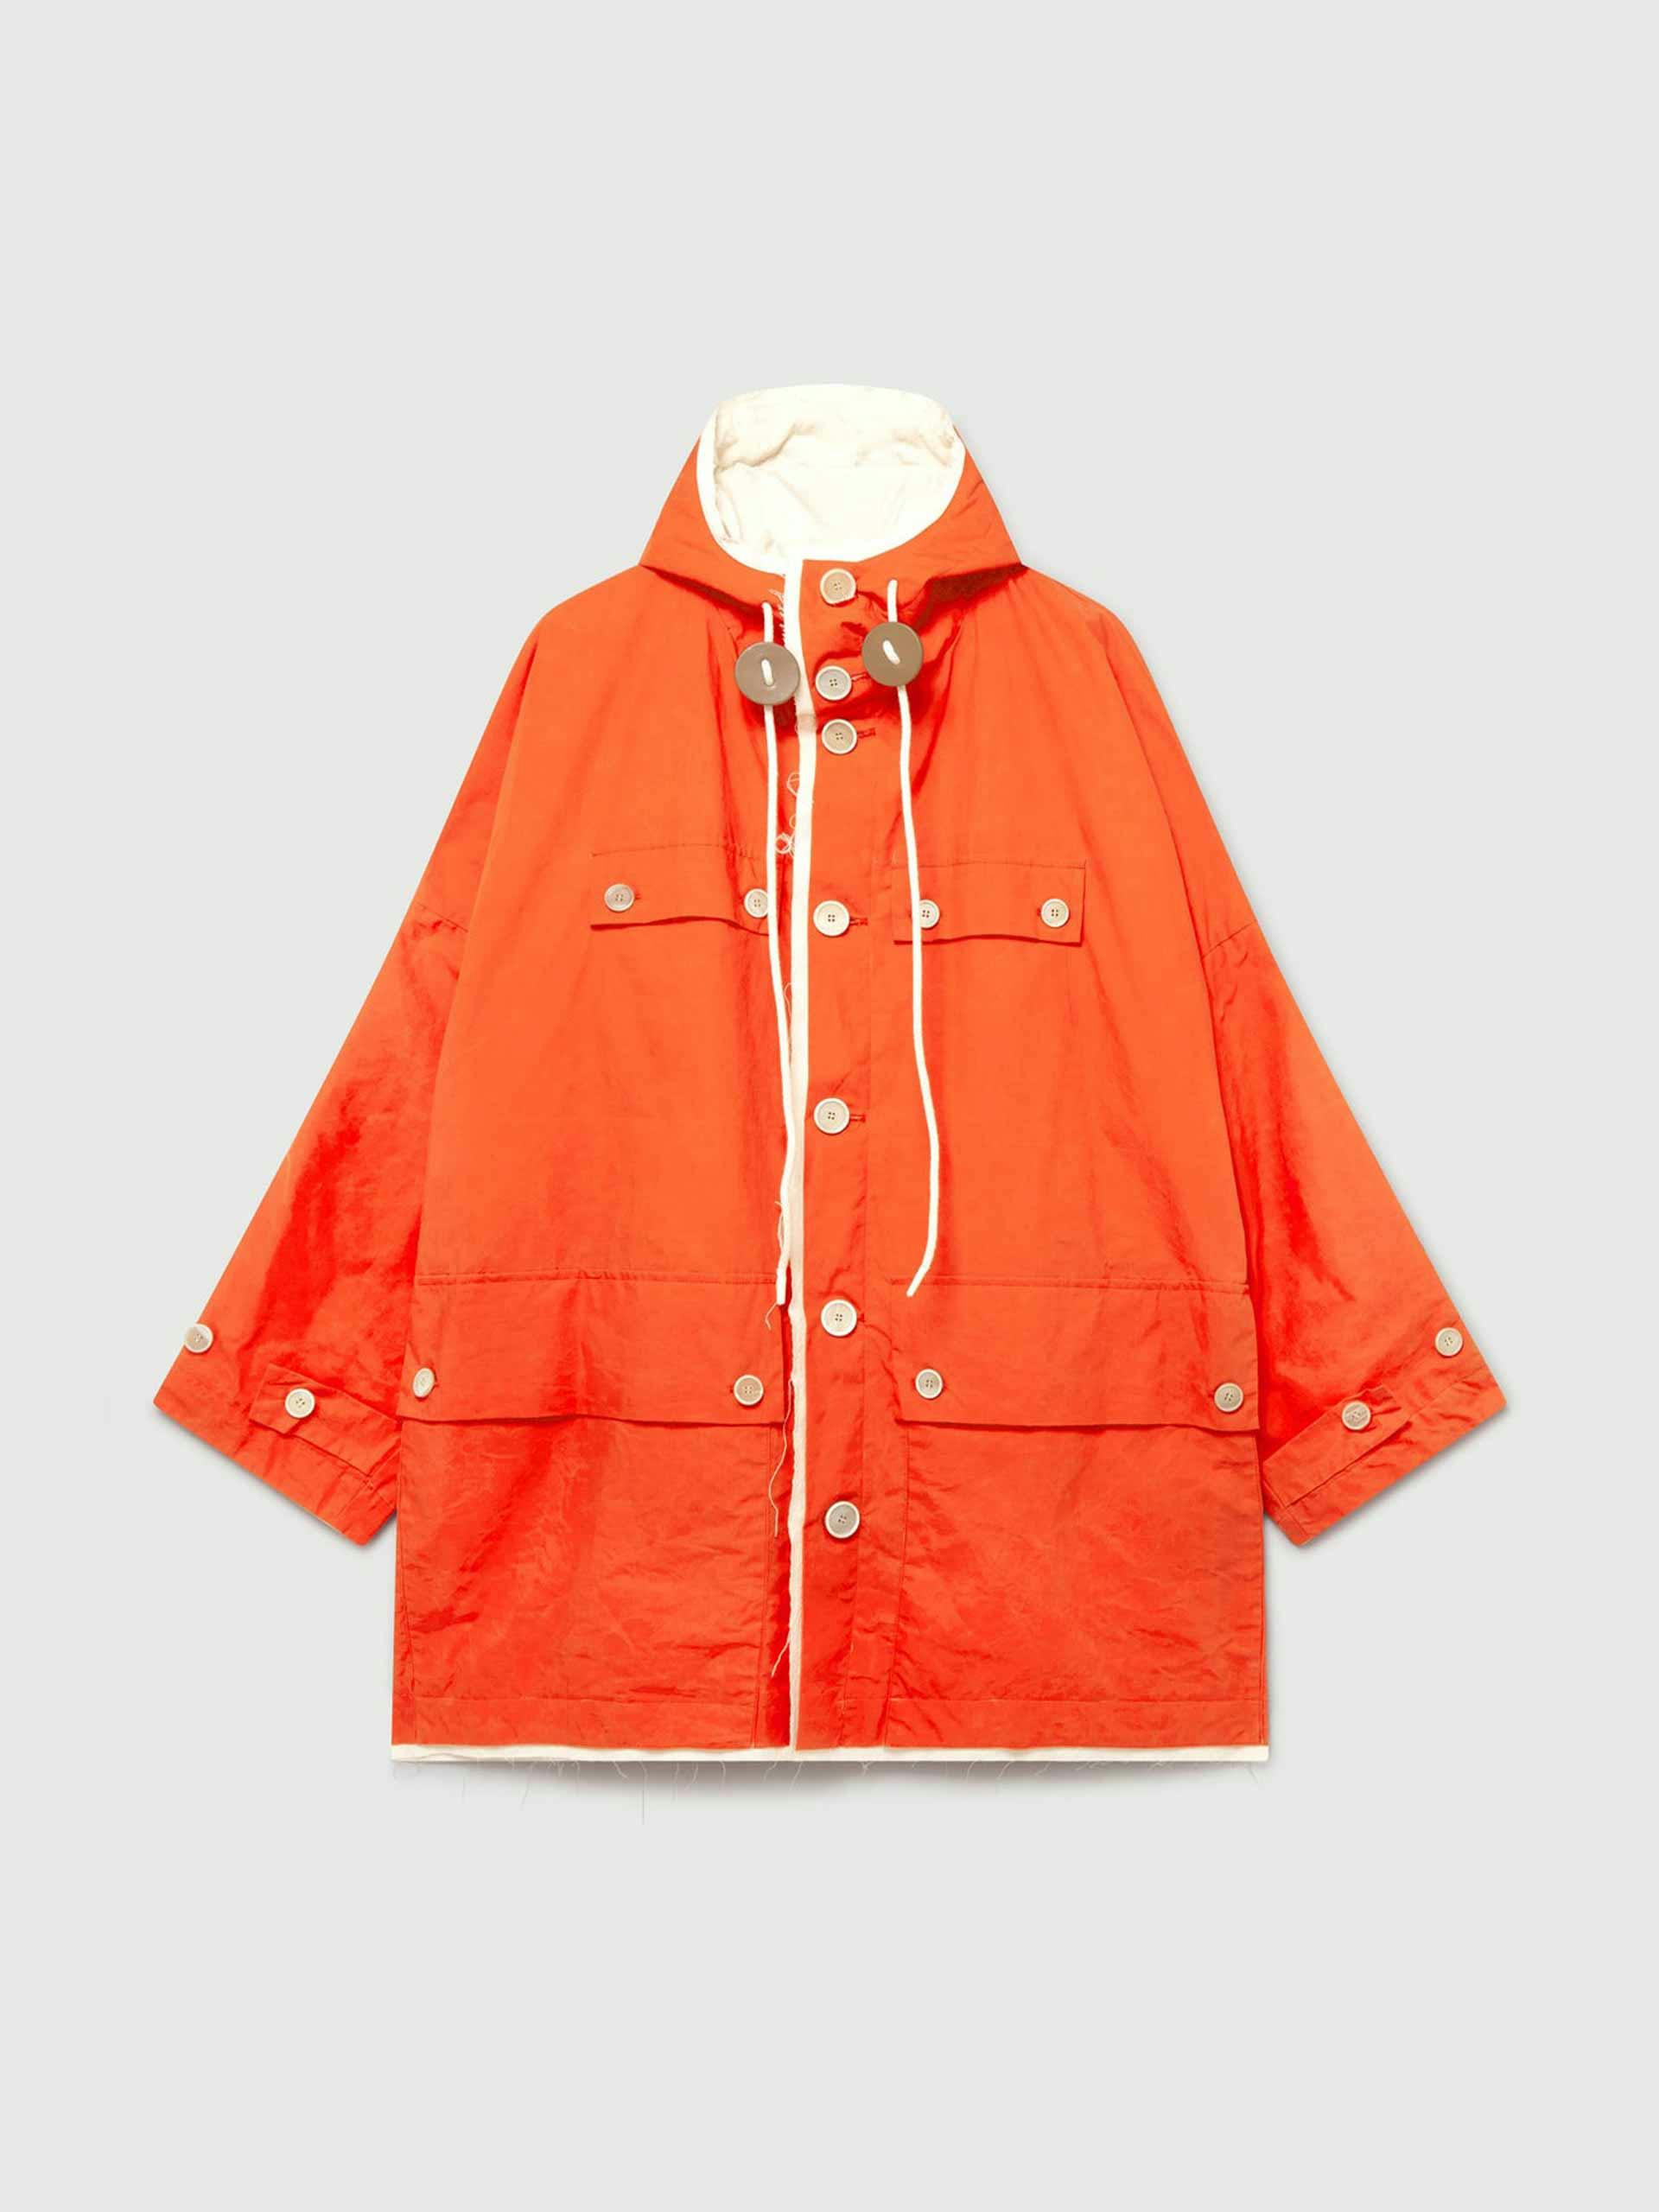 Orange hooded parka